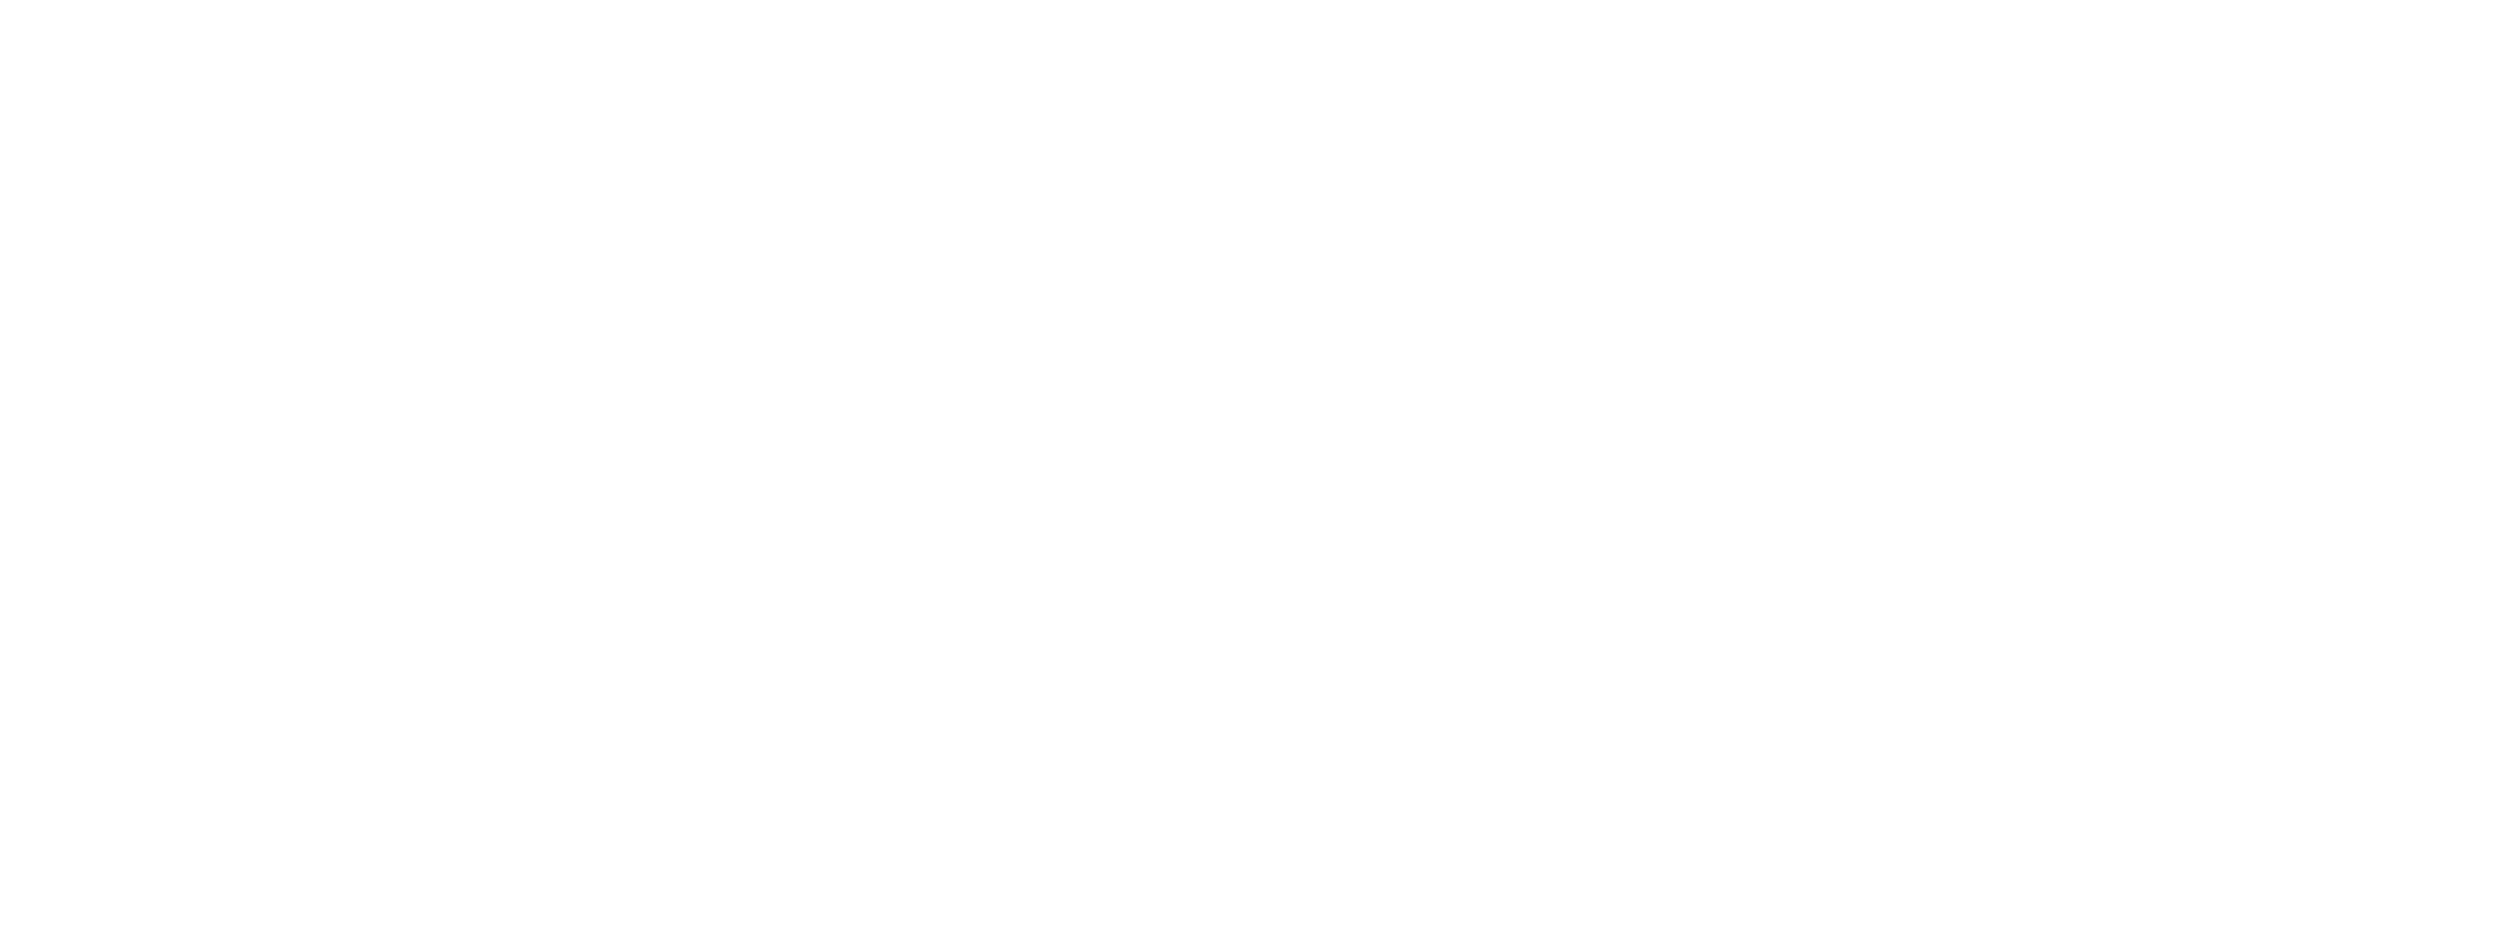 Breakthrough Action for Social & Behavior Change